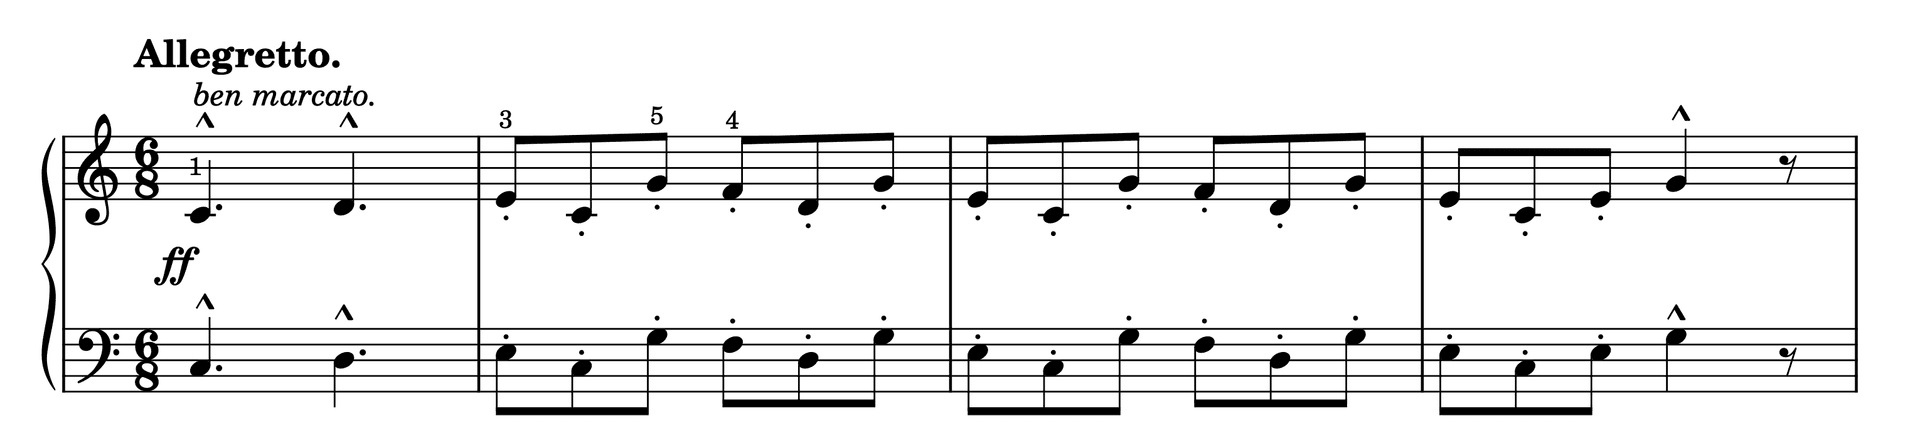 Excerpt of Etude in C Major Op. 37, No. 9